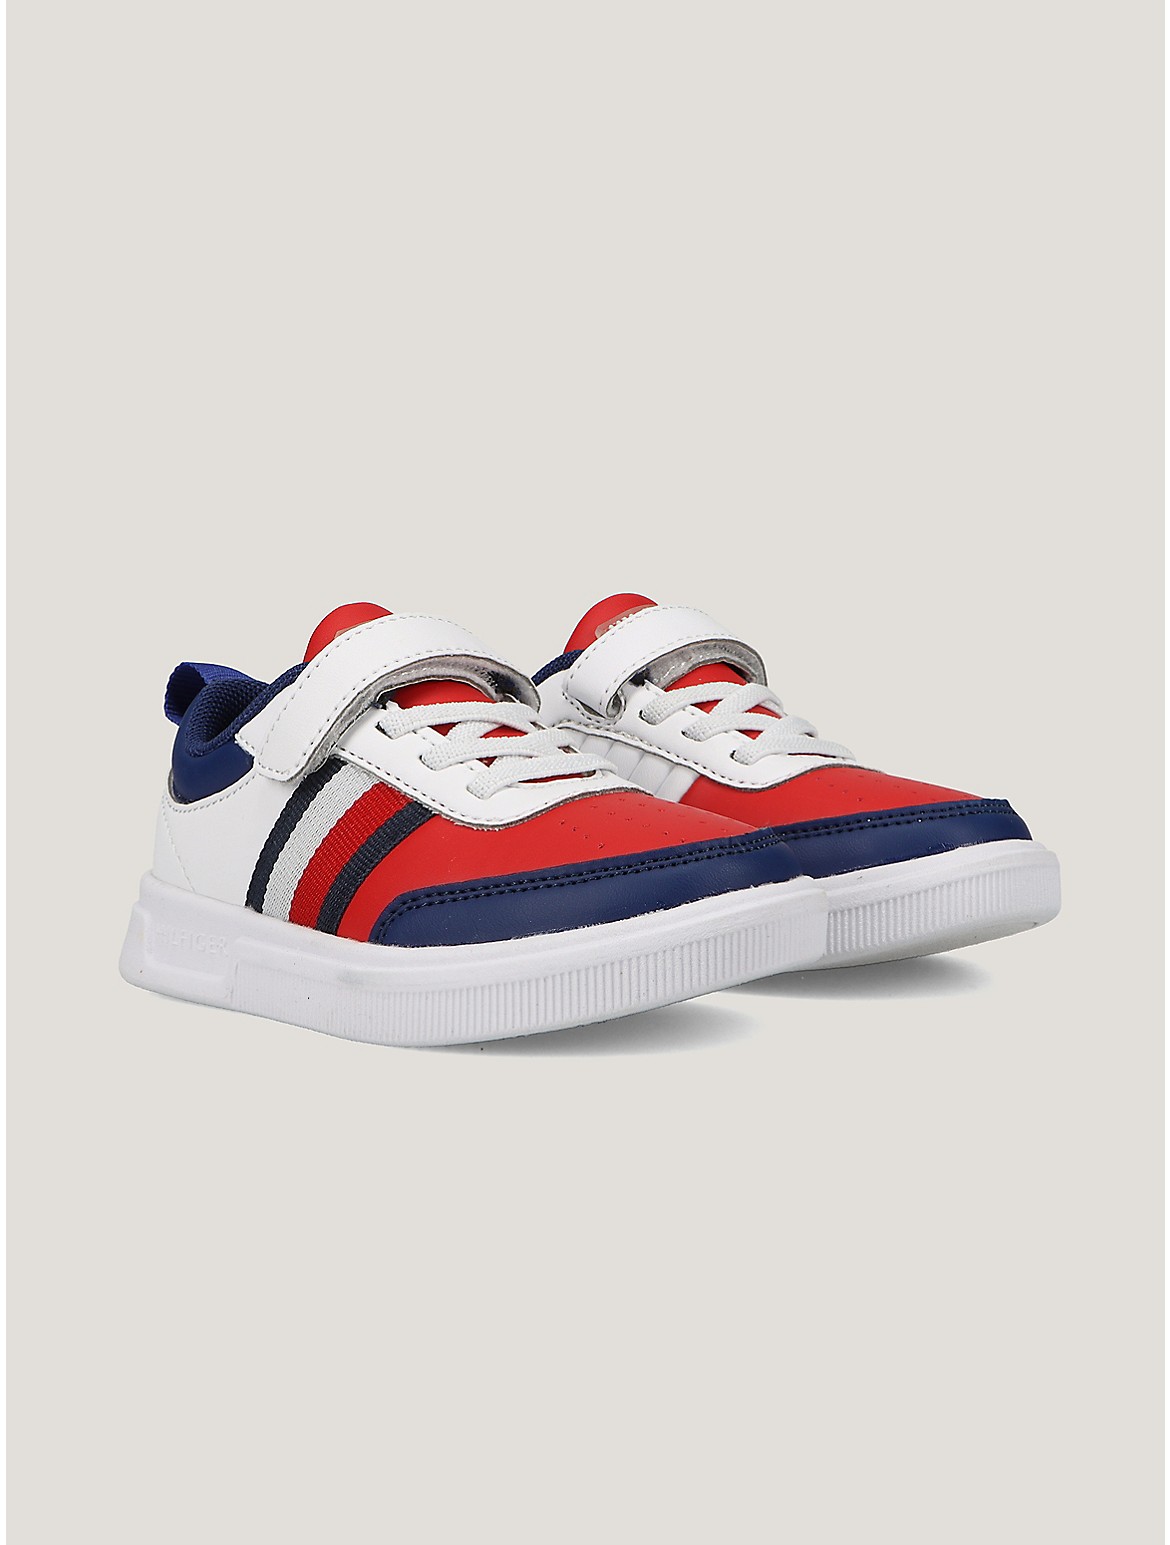 Tommy Hilfiger Boys' Little Kids' Colorblock Strap Sneaker - Multi - 9